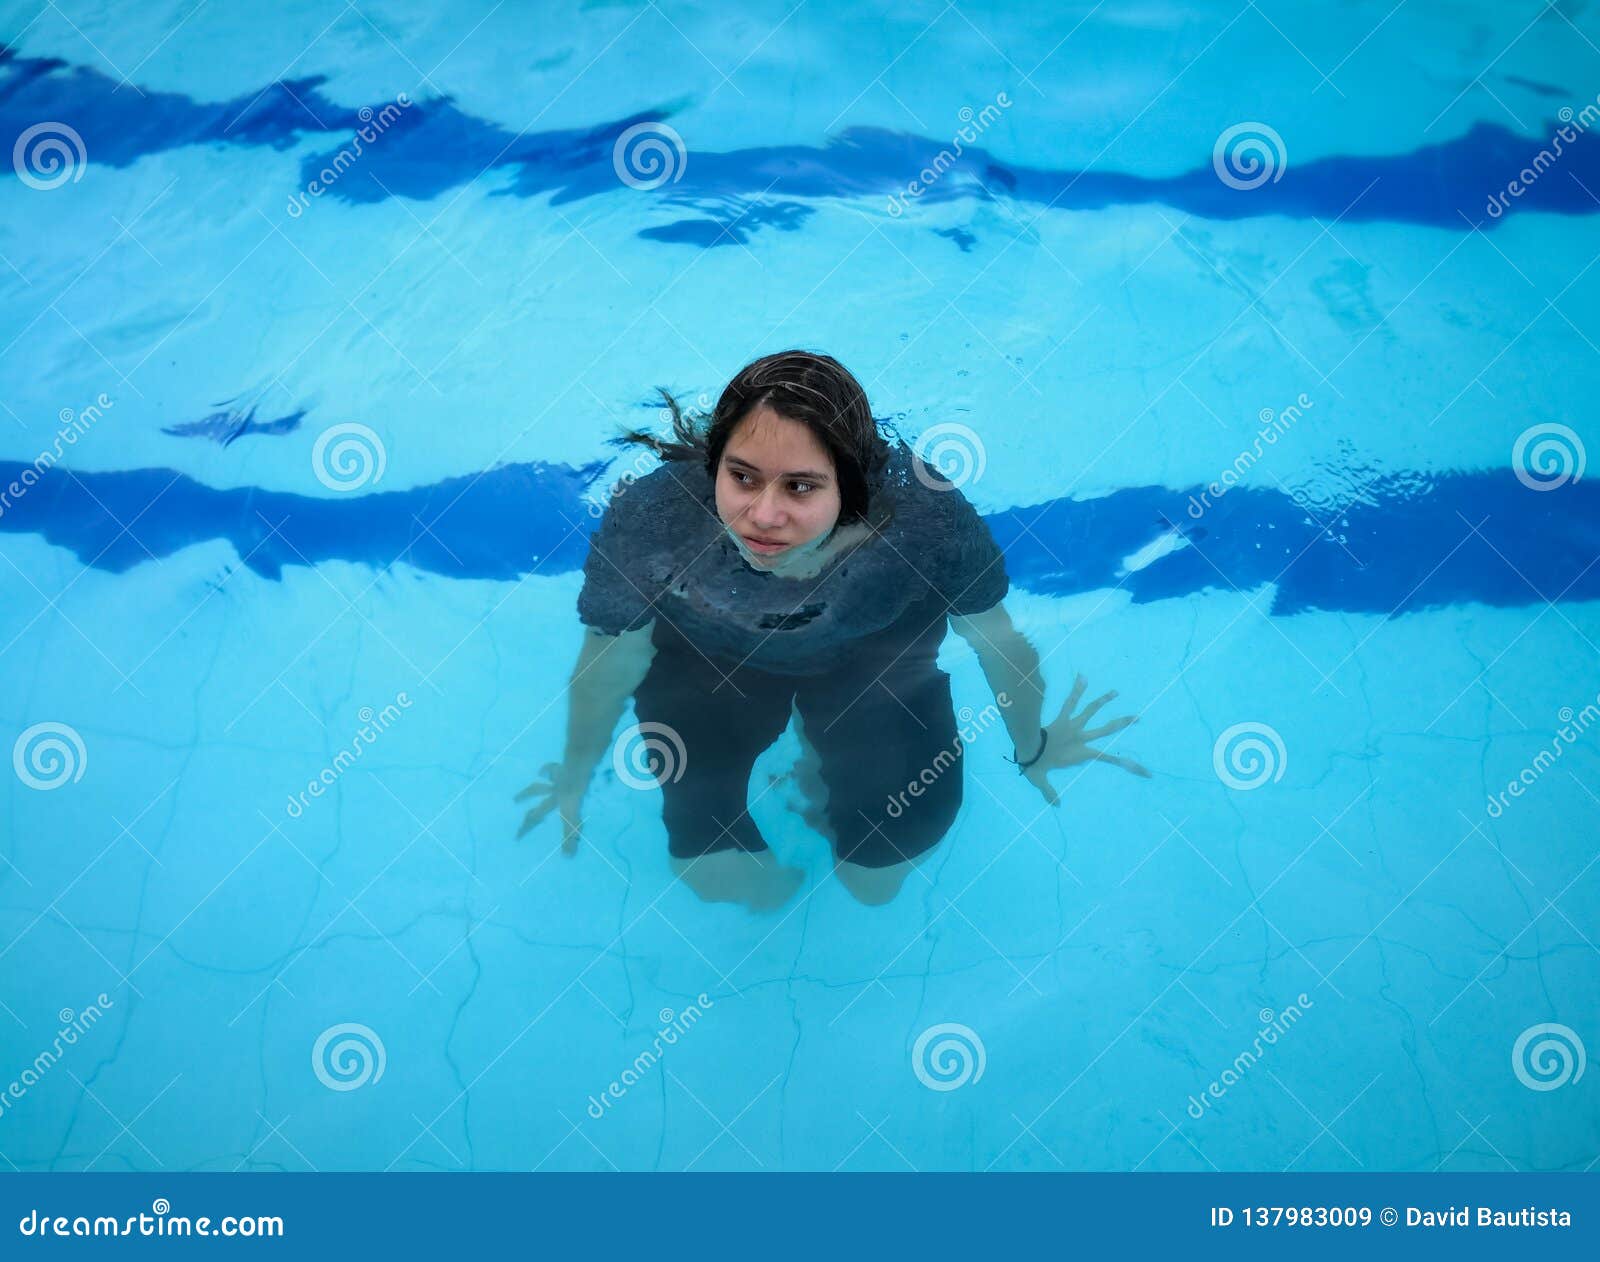 Meisje in Een Pool Met Zwarte Kleren Blauw Met Abstracte Vervorming Stock Afbeelding - Image of vreugde, volwassen: 137983009